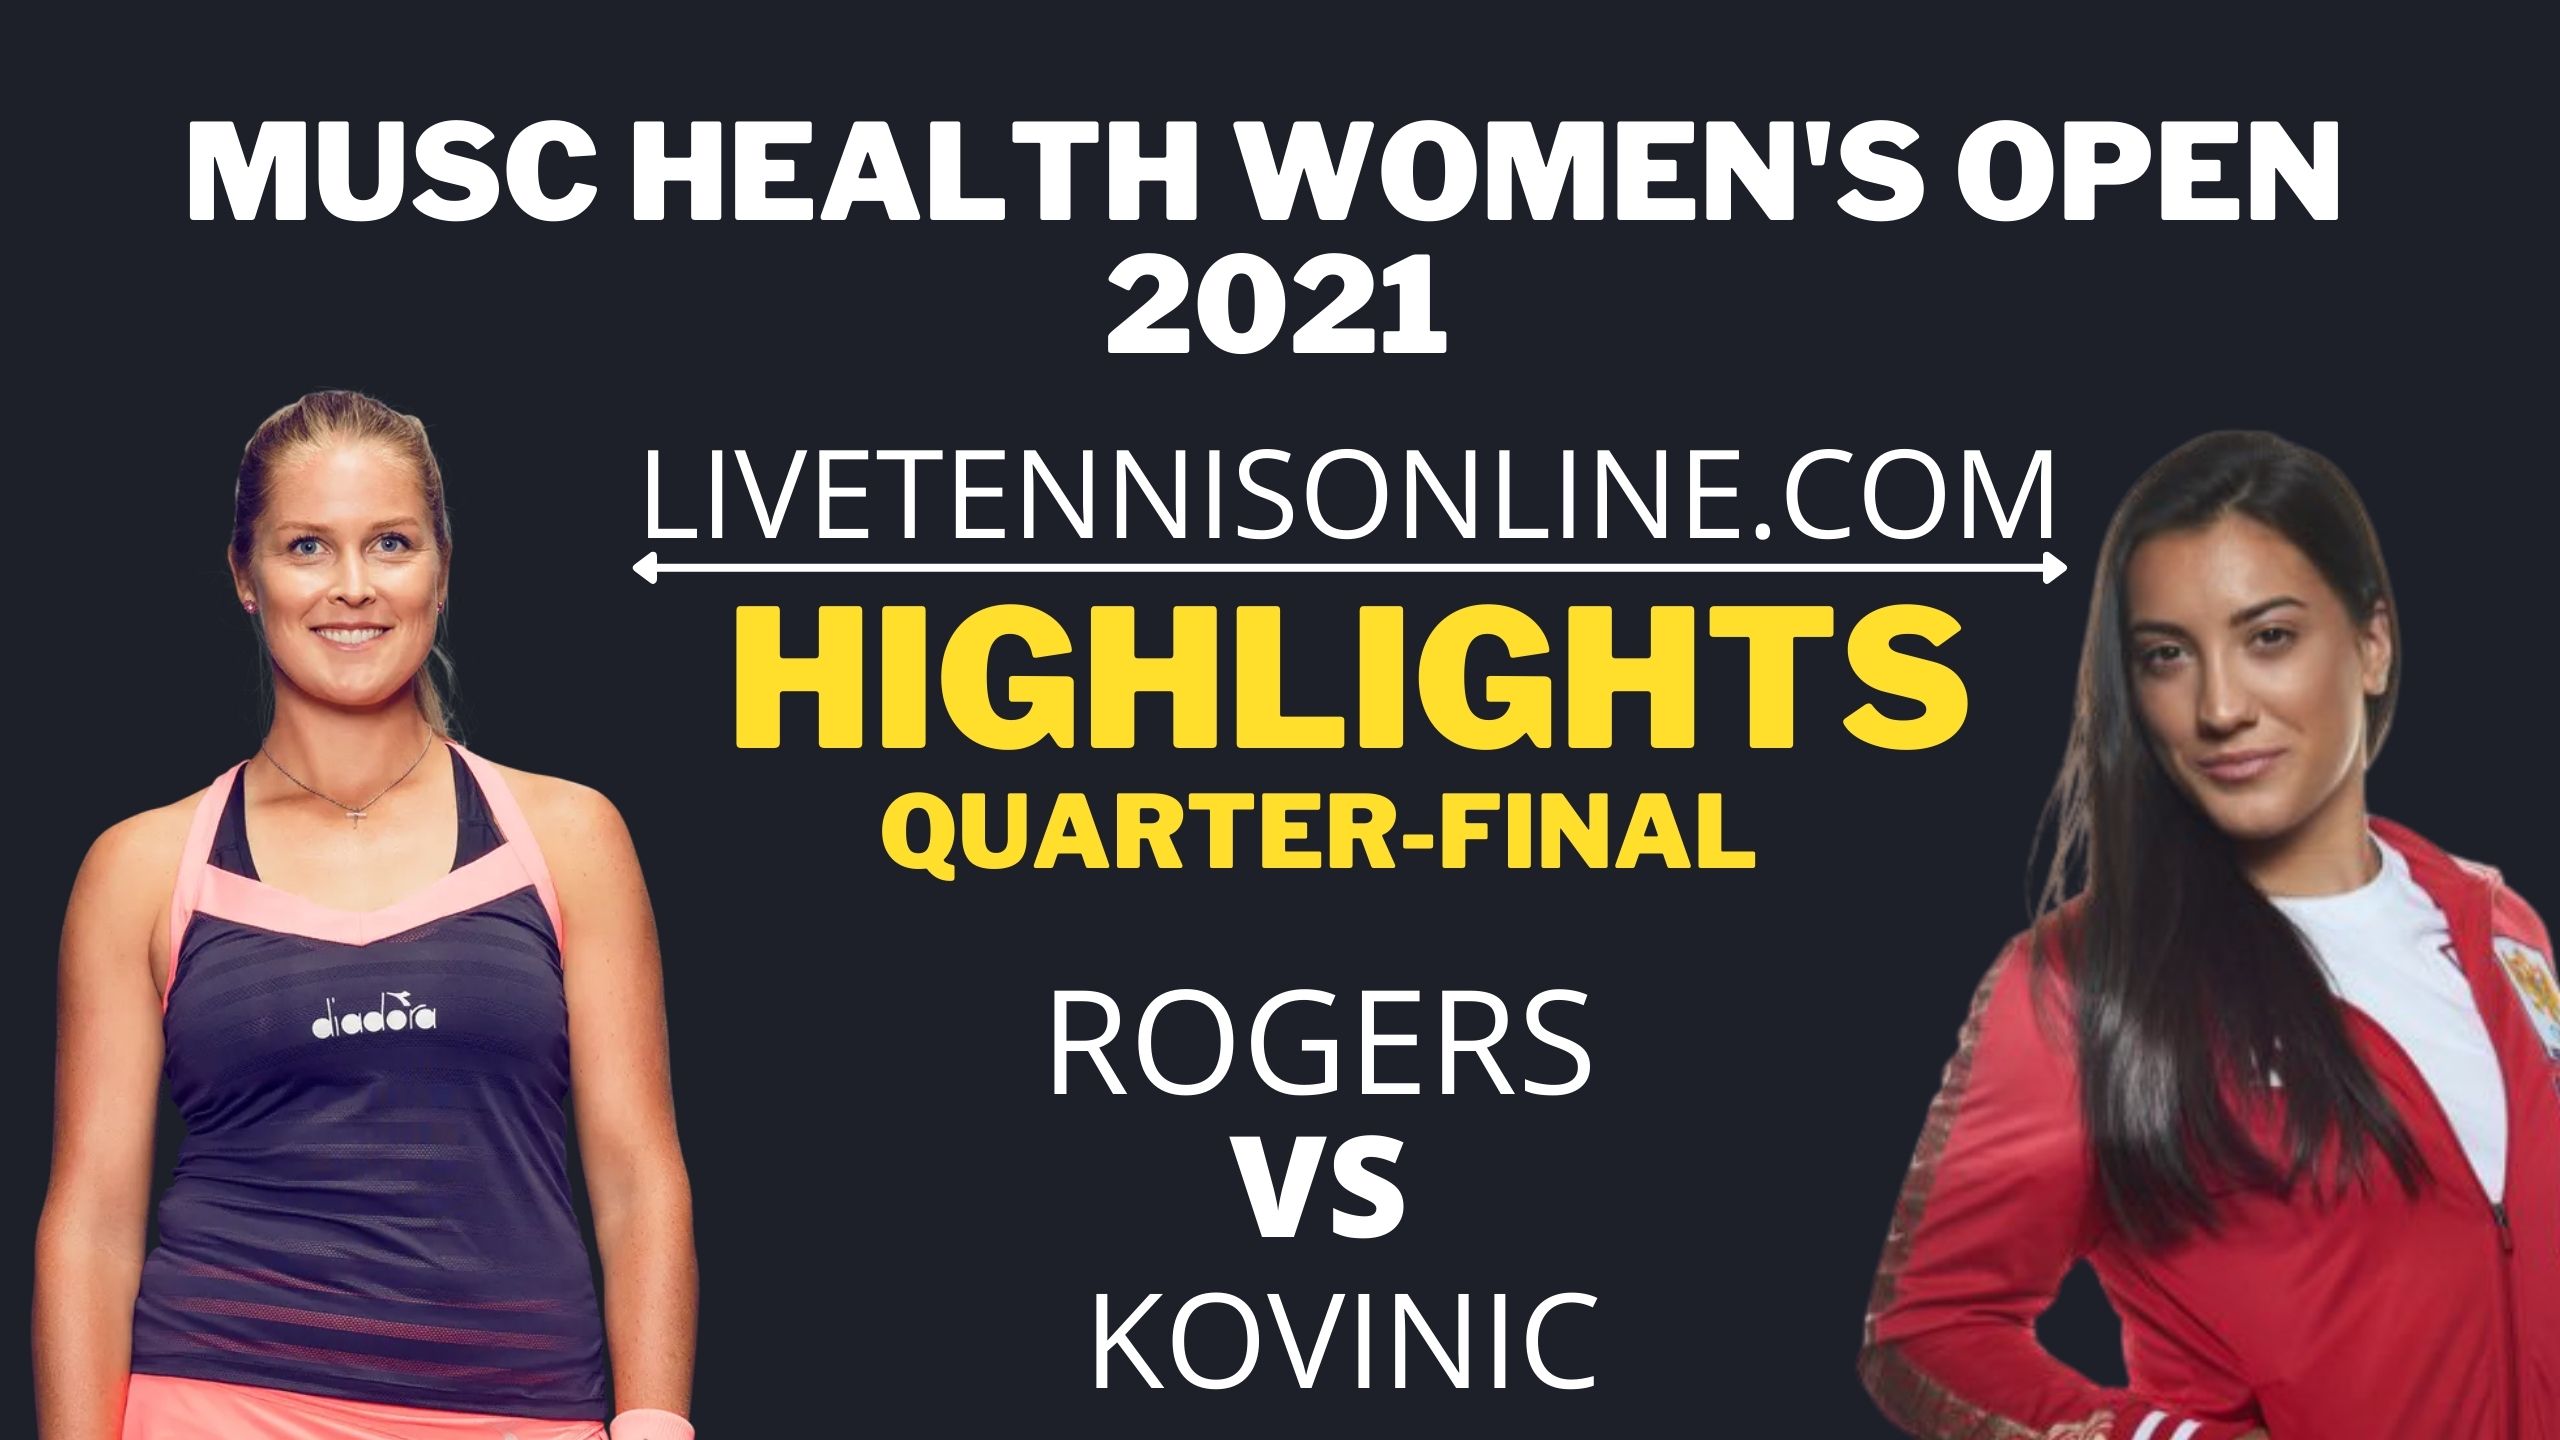 Rogers Vs Kovinic Quarter Final Highlights 2021